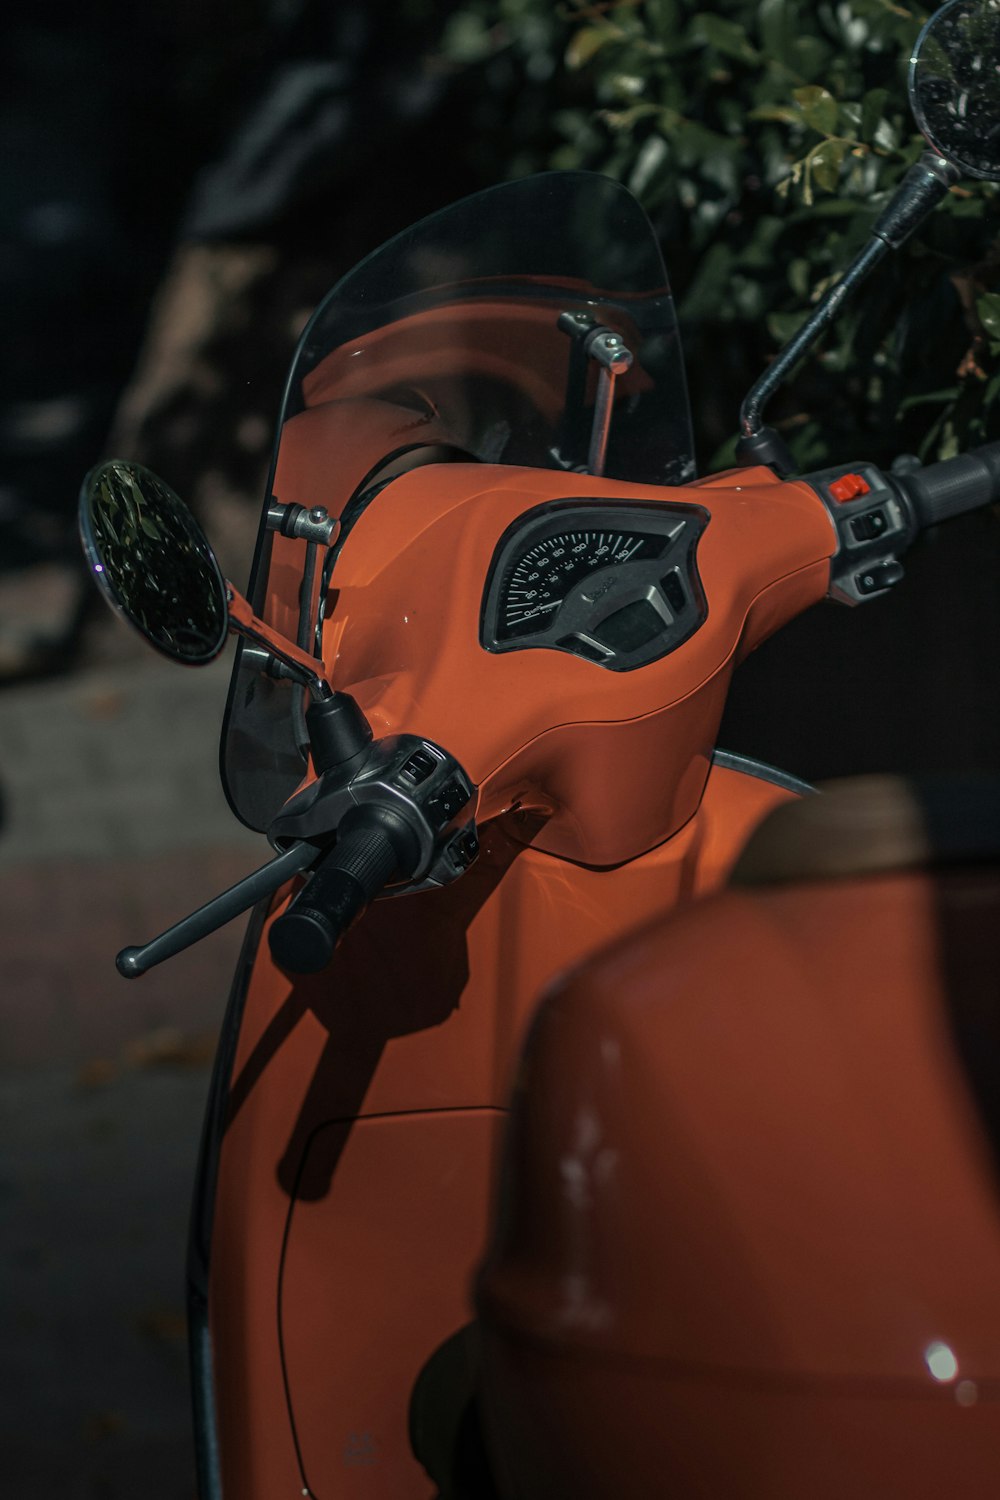 orange and black motorcycle with helmet